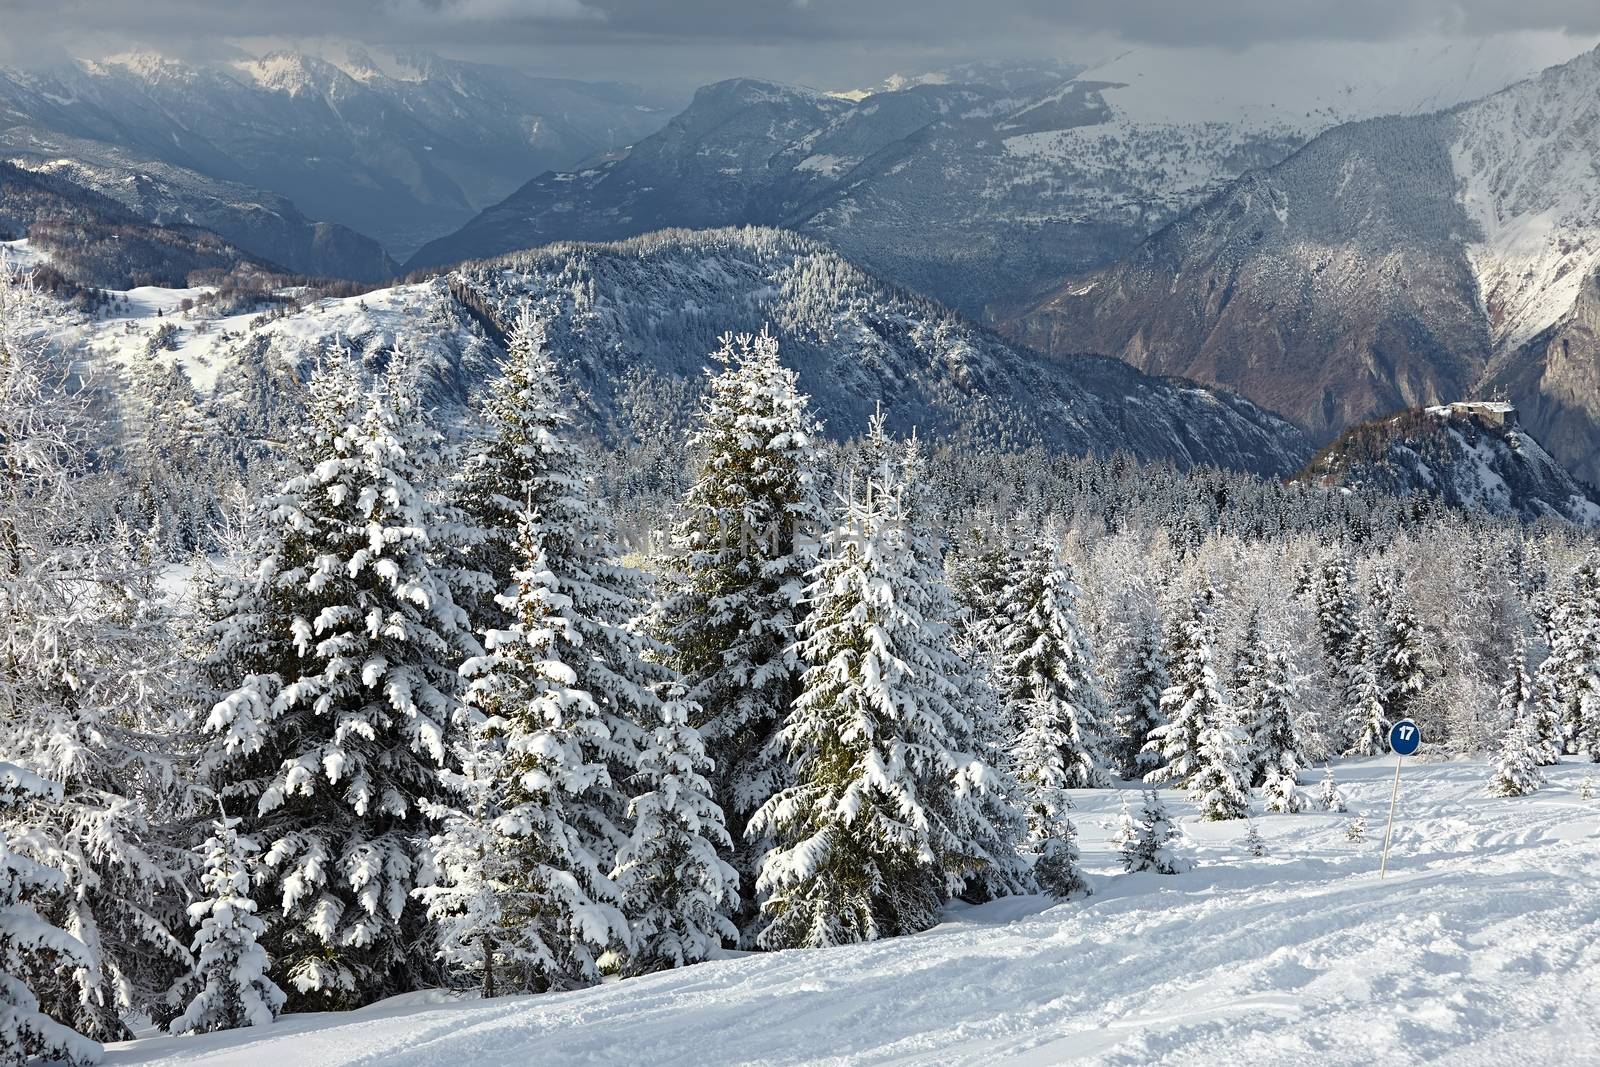 Winter Landscape by Gudella